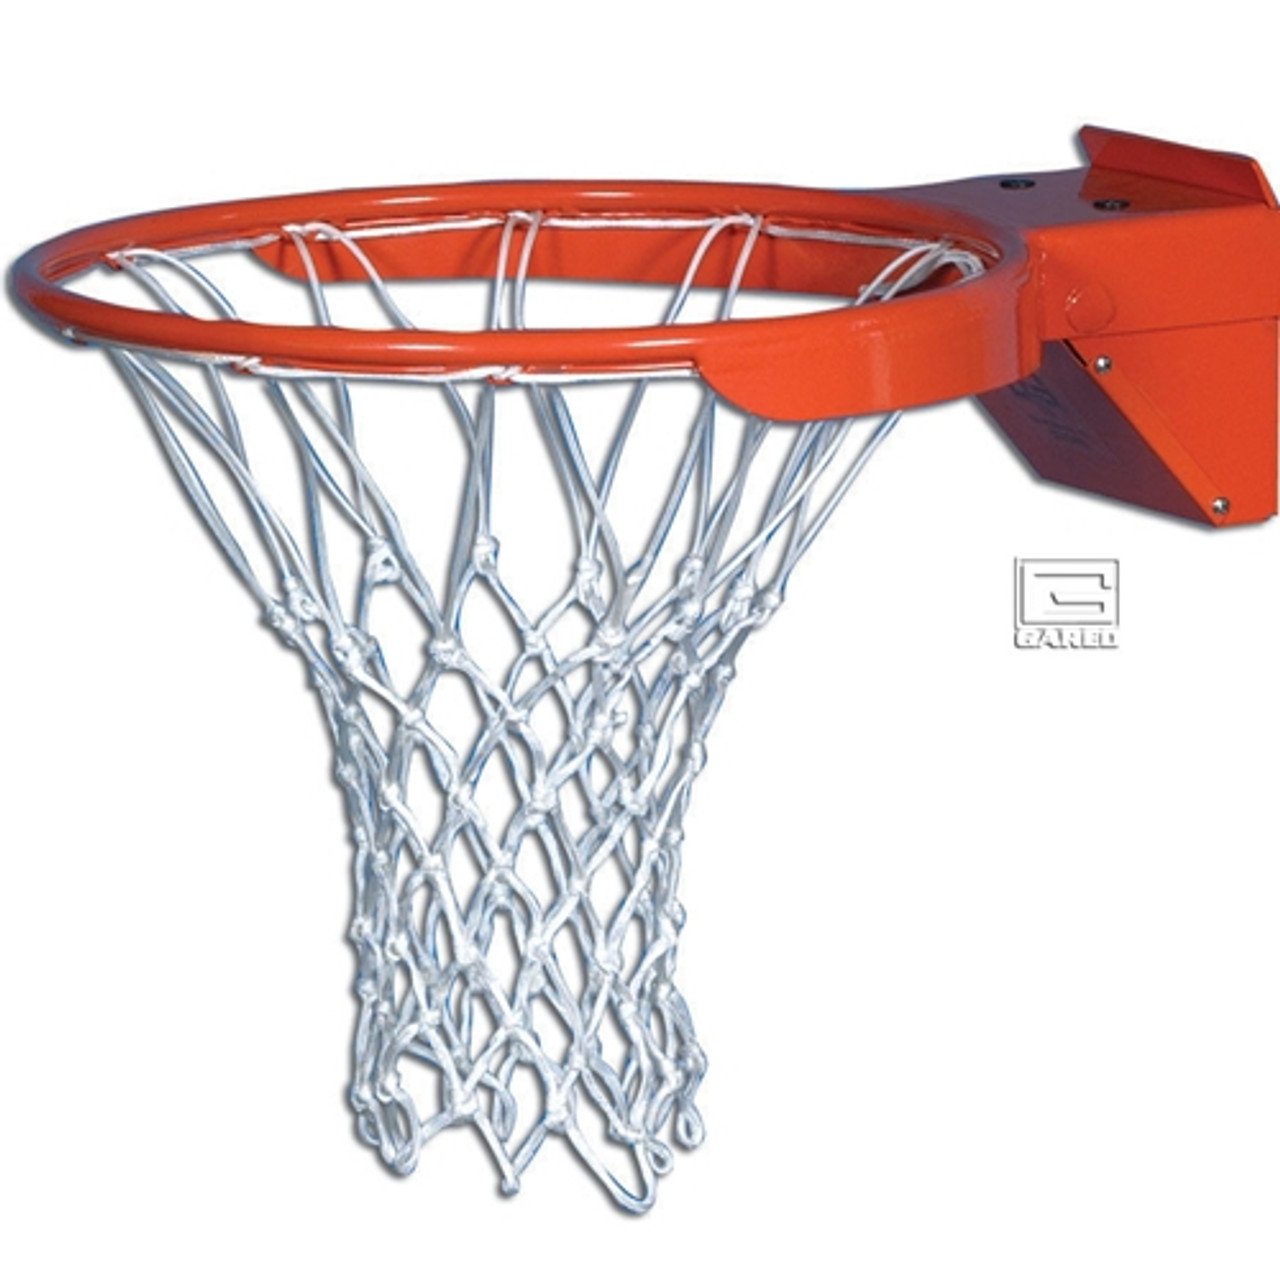 nba basketball hoop